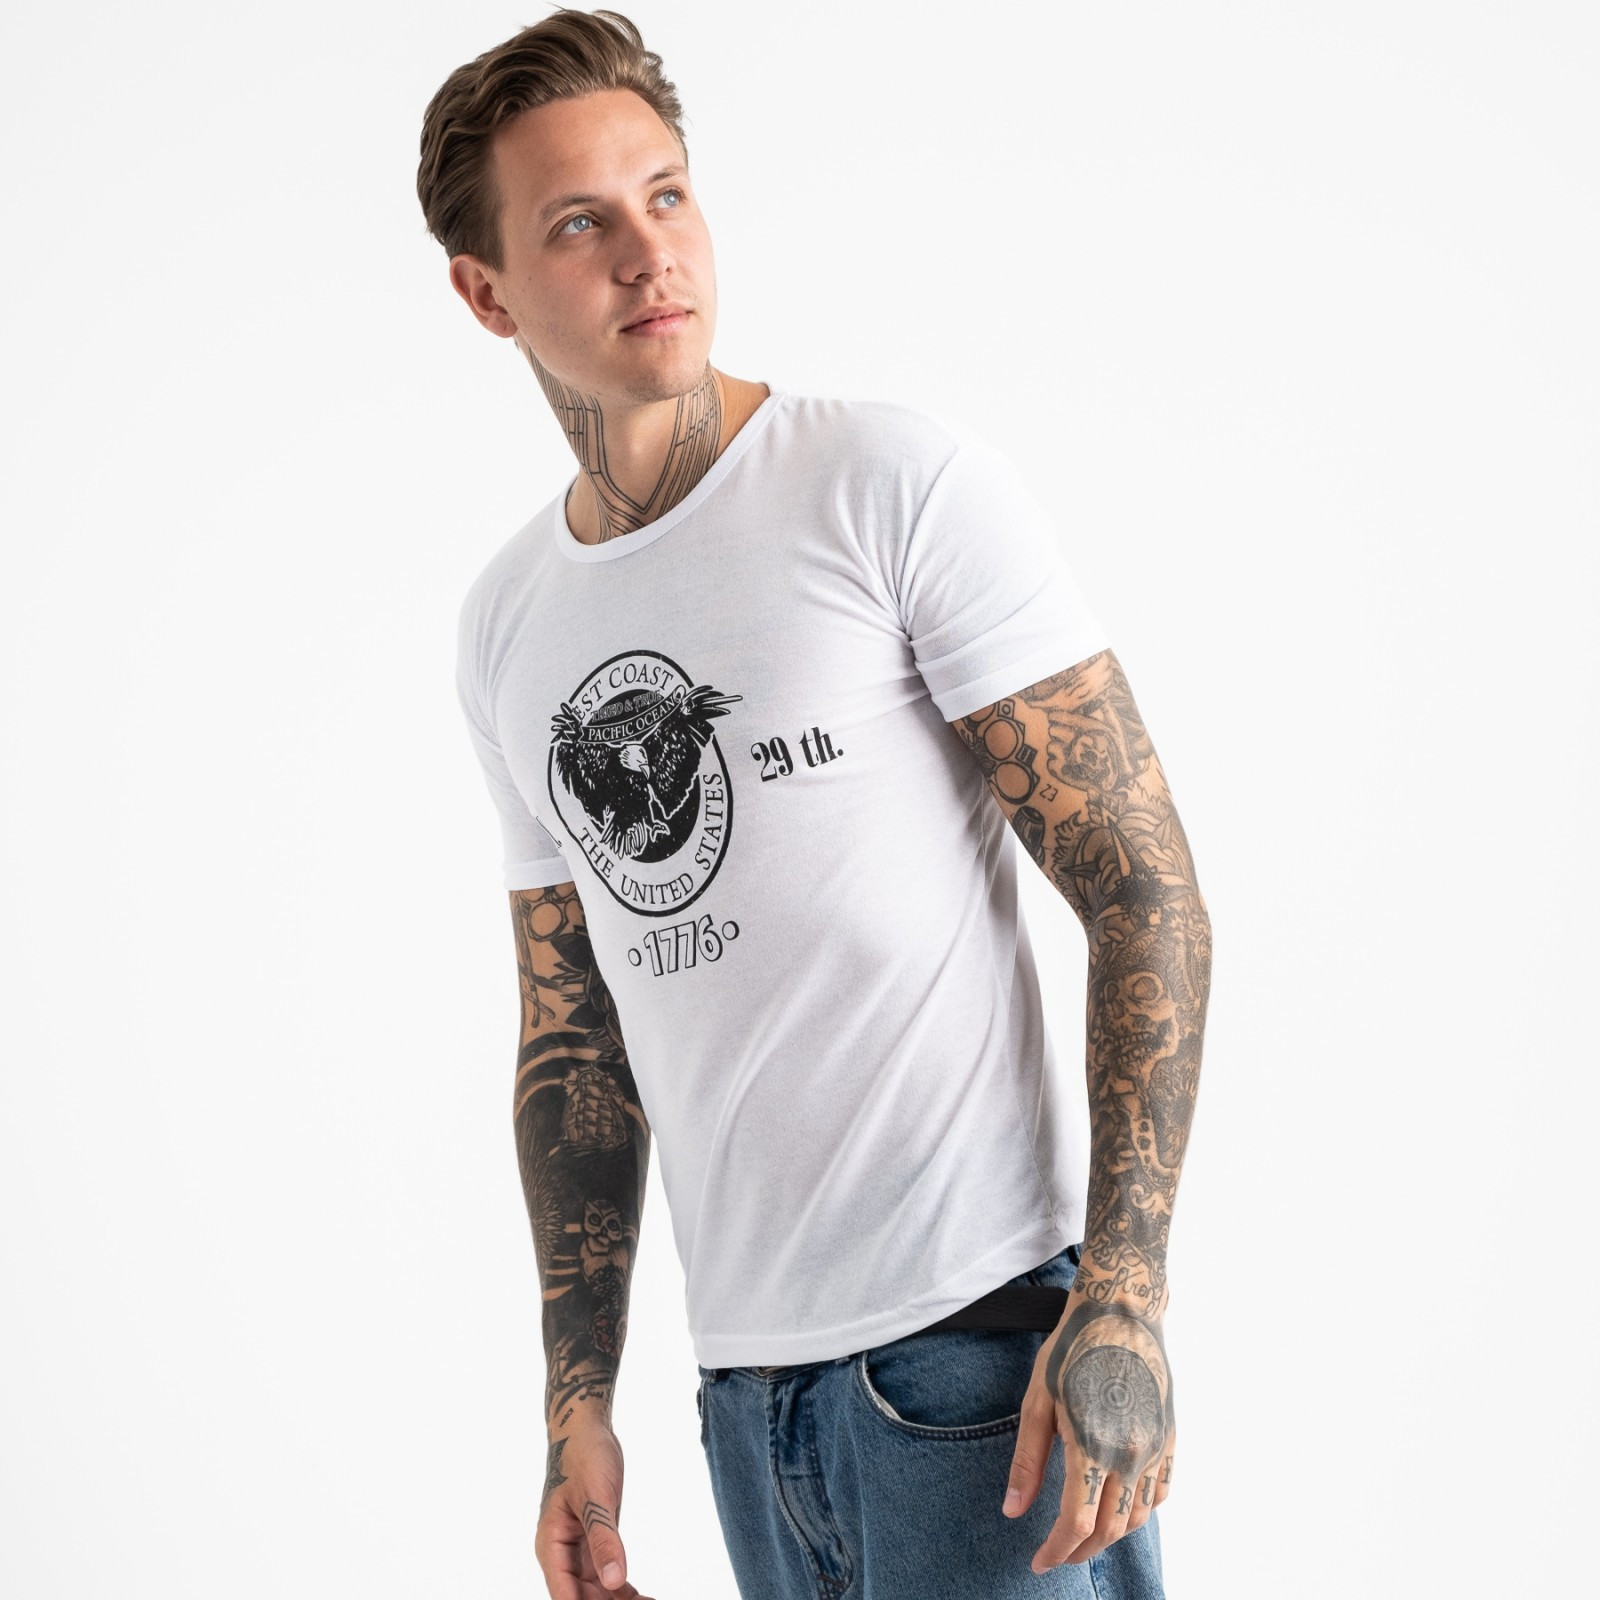 2606-10 белая футболка мужская с принтом (4 ед. размеры: M.L.XL.2XL)